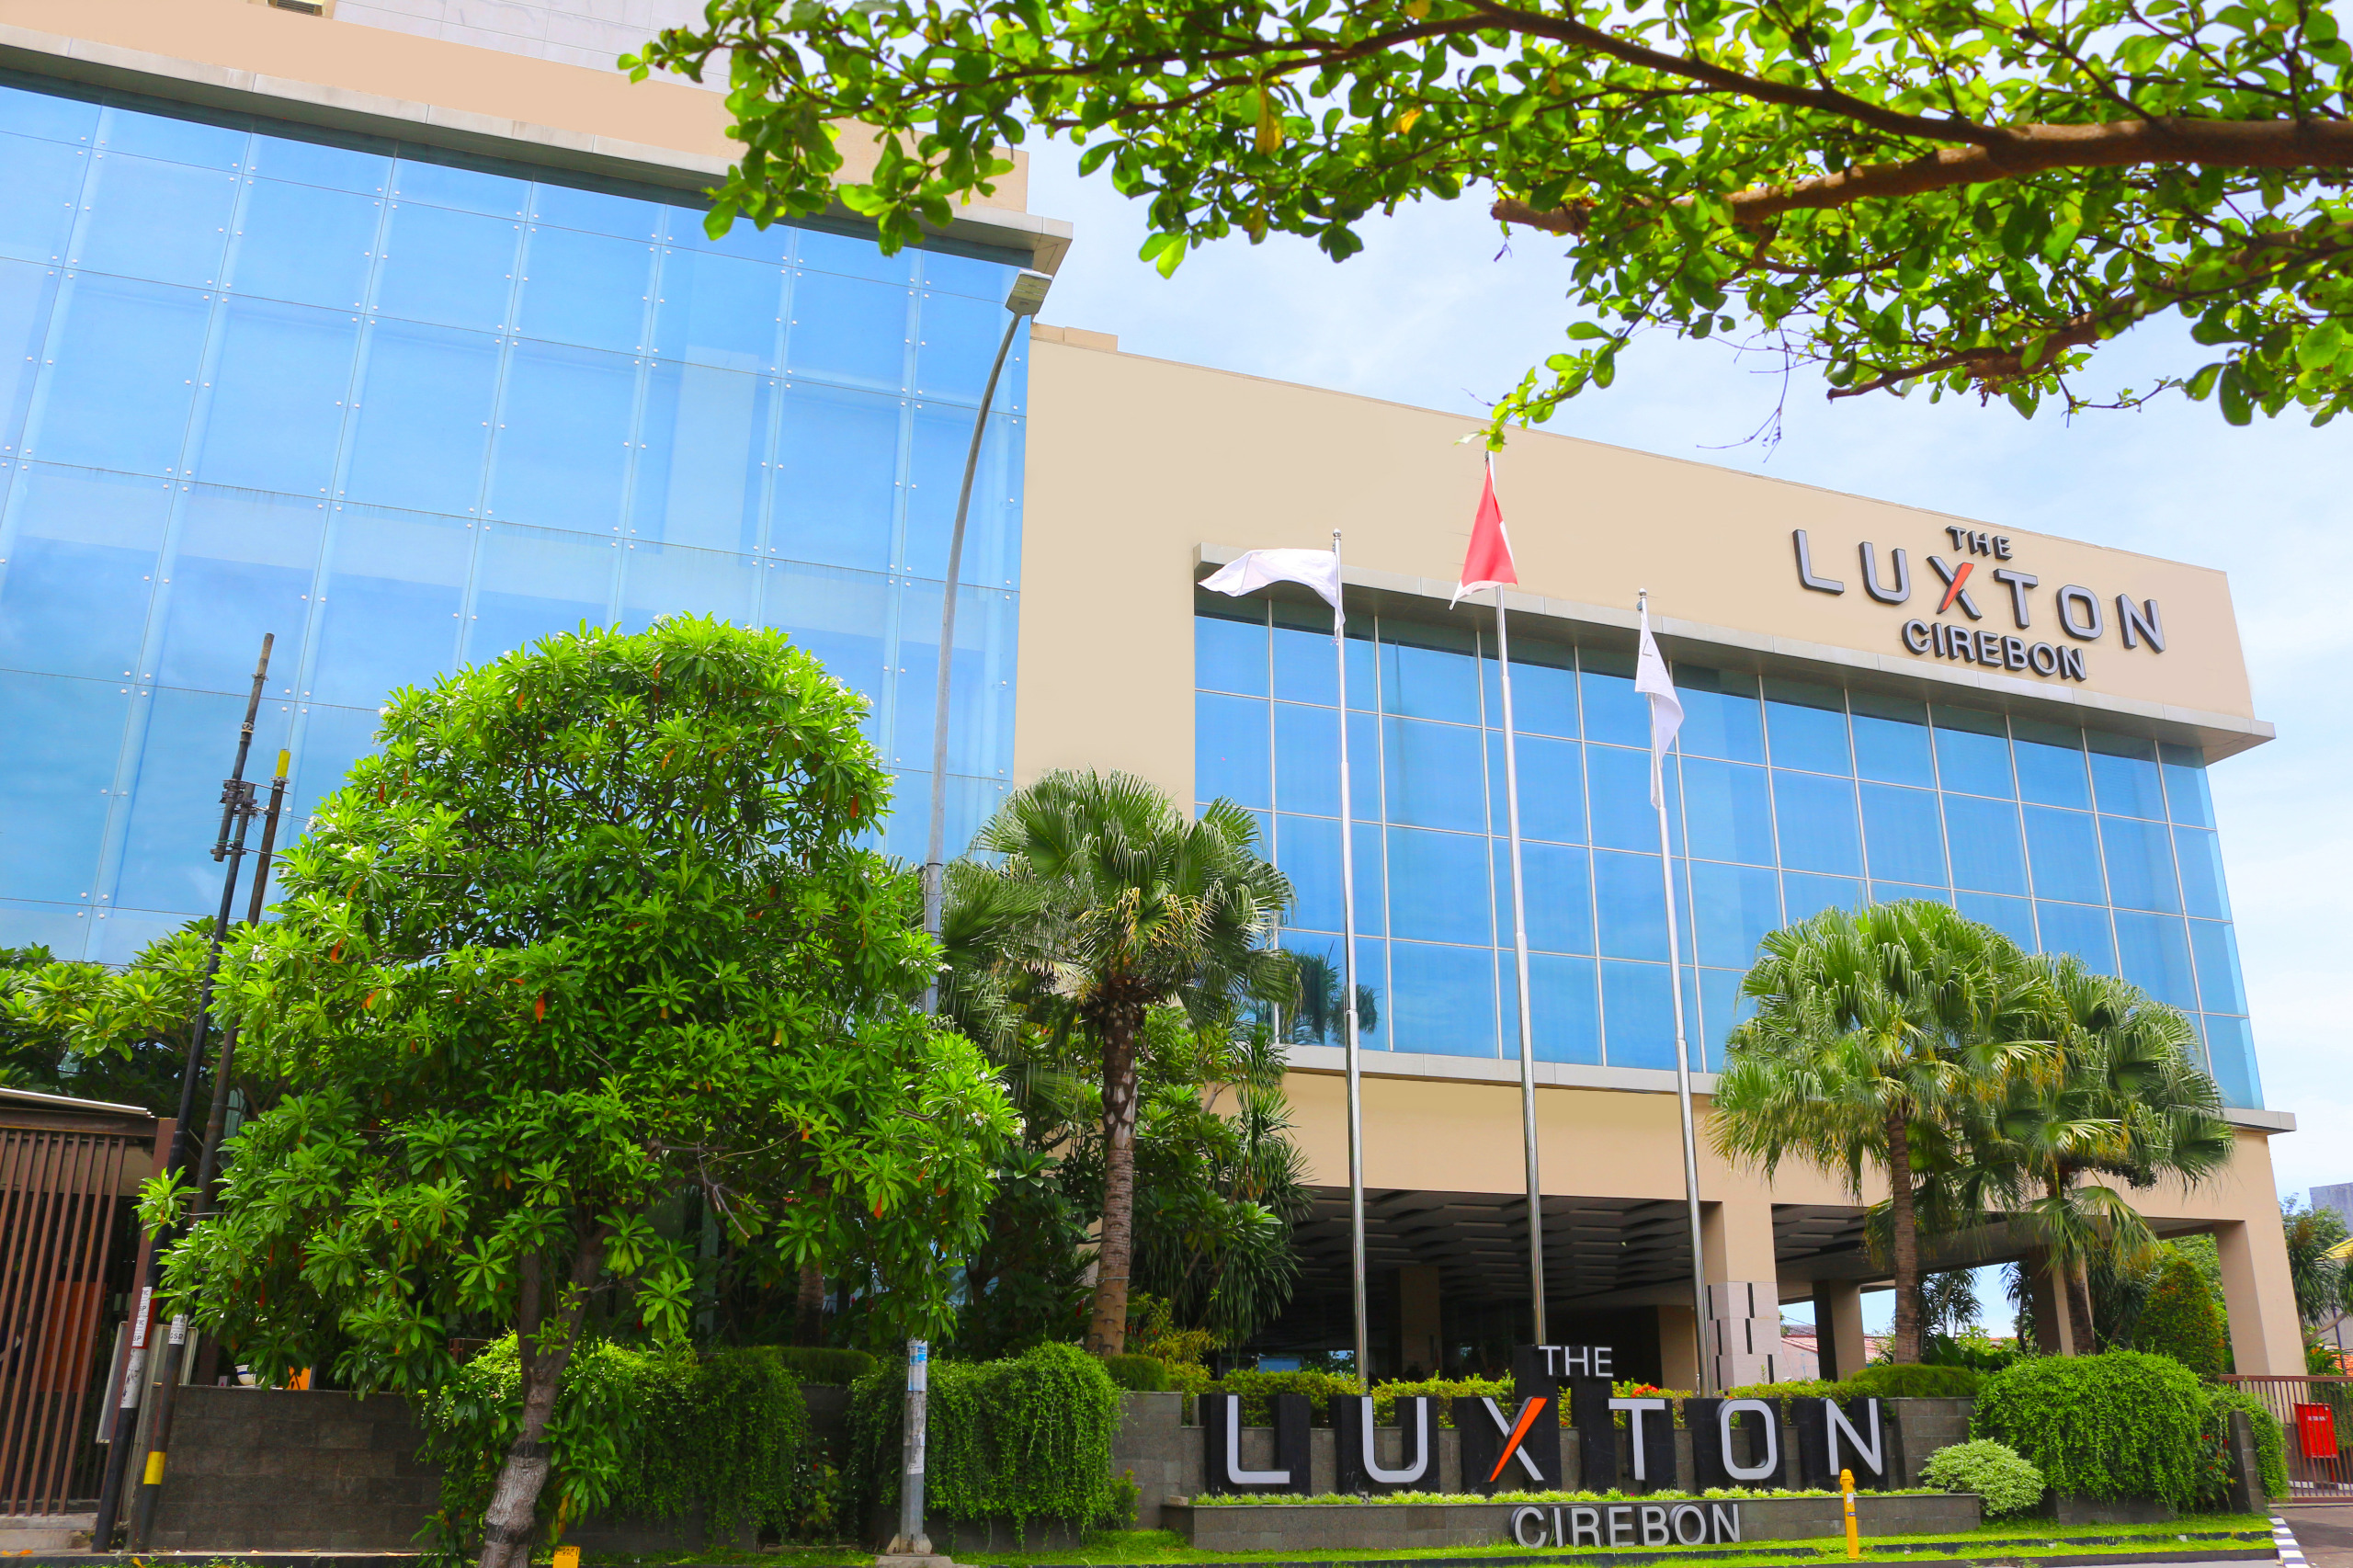 The Luxton Beri Harga Spesial untuk Warga Ciayumajakuning, Tinggal Tunjukan KTP